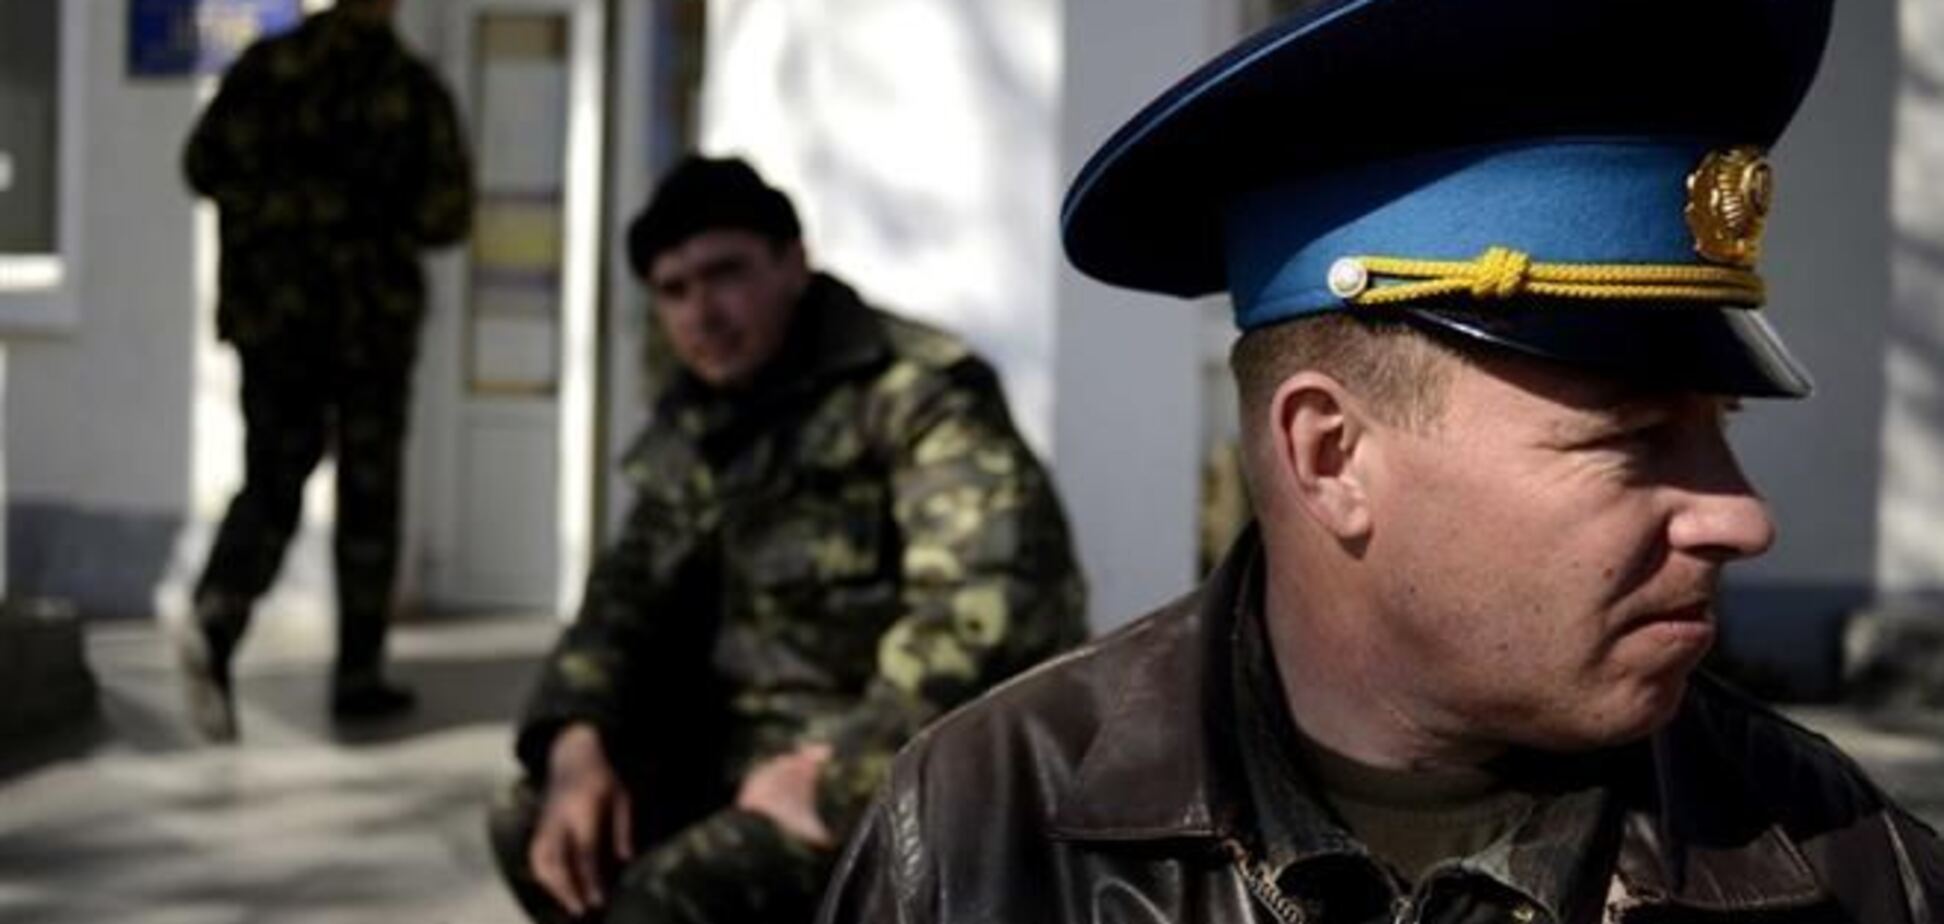 Війська РФ отримали команду до 25 березня очистити Крим від української армії